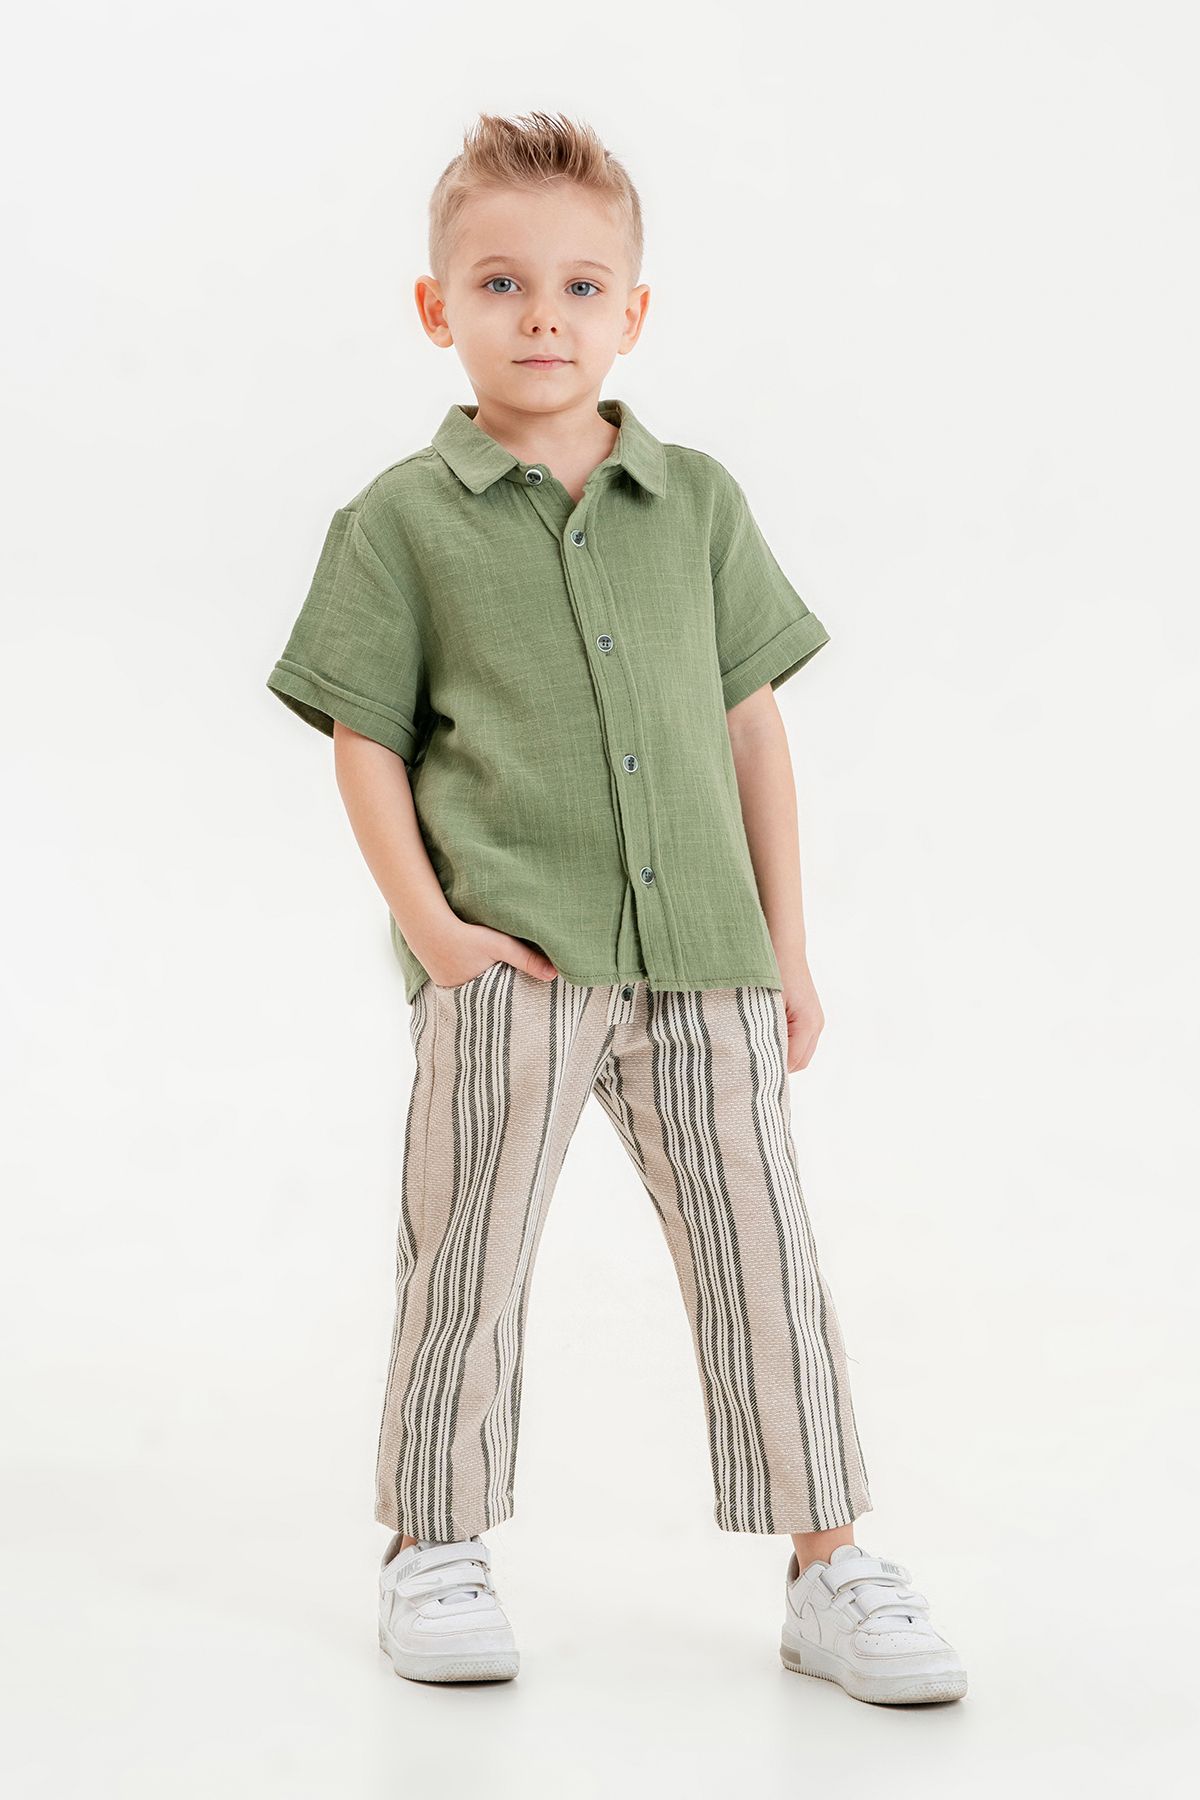 Tuffy Kids Erkek Çocuk Yazlık Müslin Gömlekli Keten Pantolonlu Basic Ikili Takım 2-5 Yaş